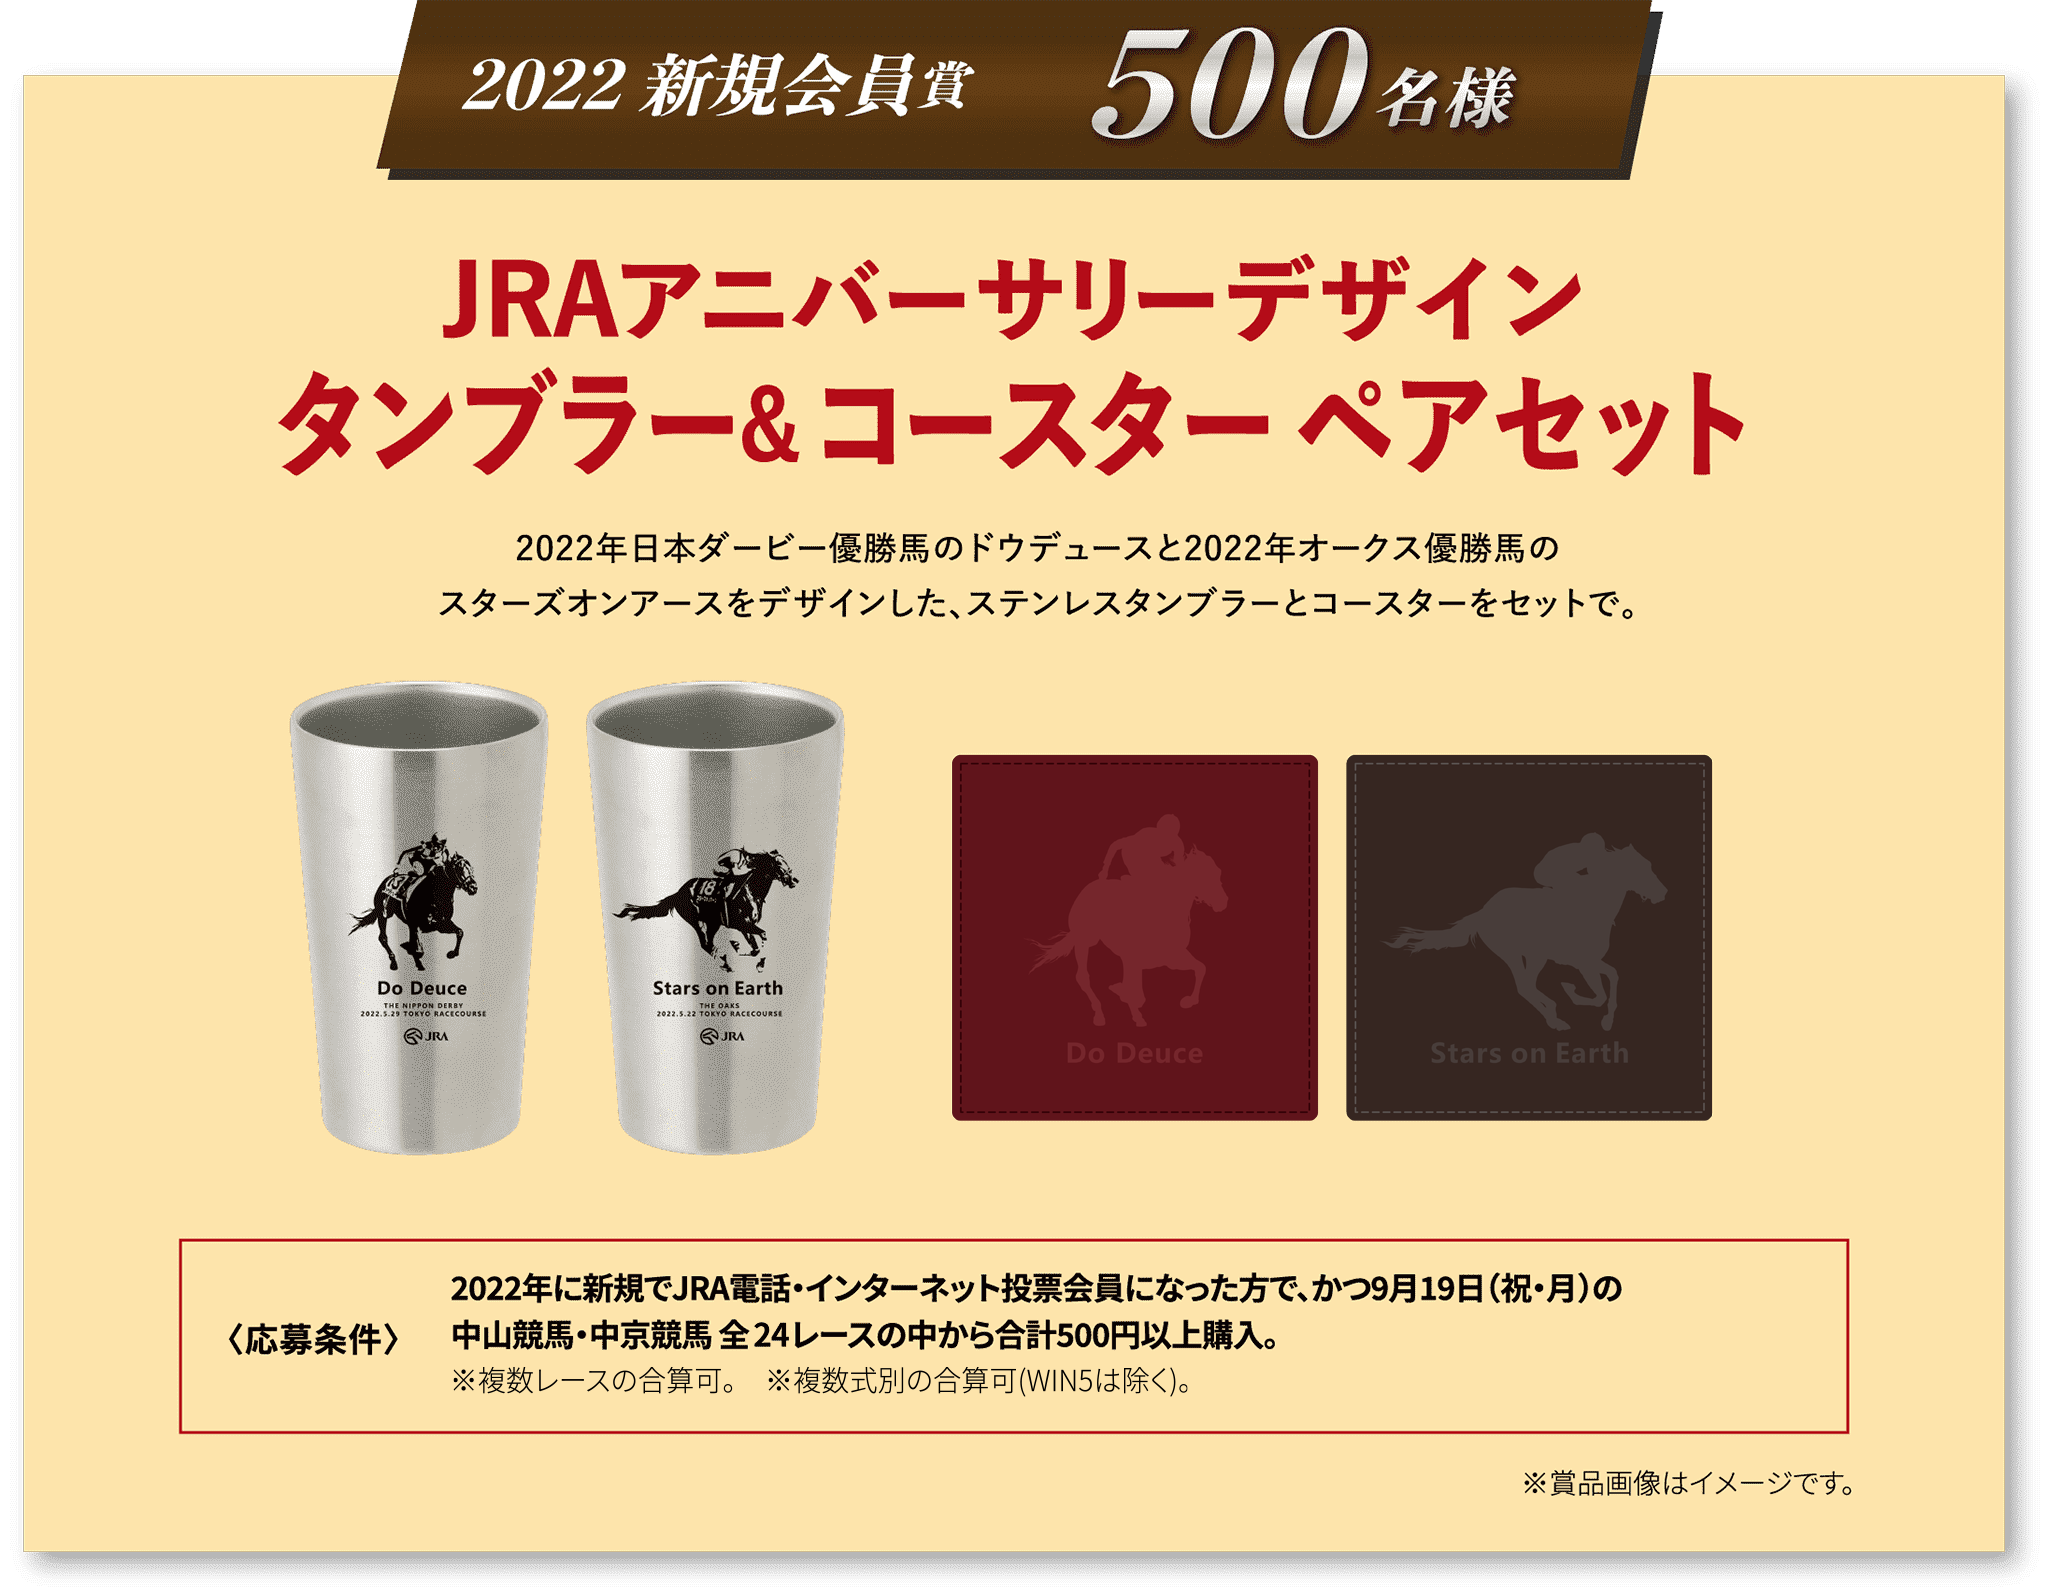 2022 新規会員賞 500名様 JRAアニバーサリーデザイン
タンブラー＆コースター ペアセット 2022年日本ダービー優勝馬のドウデュースと2022年オークス優勝馬のスターズオンアースをデザインした、ステンレスタンブラーとコースターをセットで。